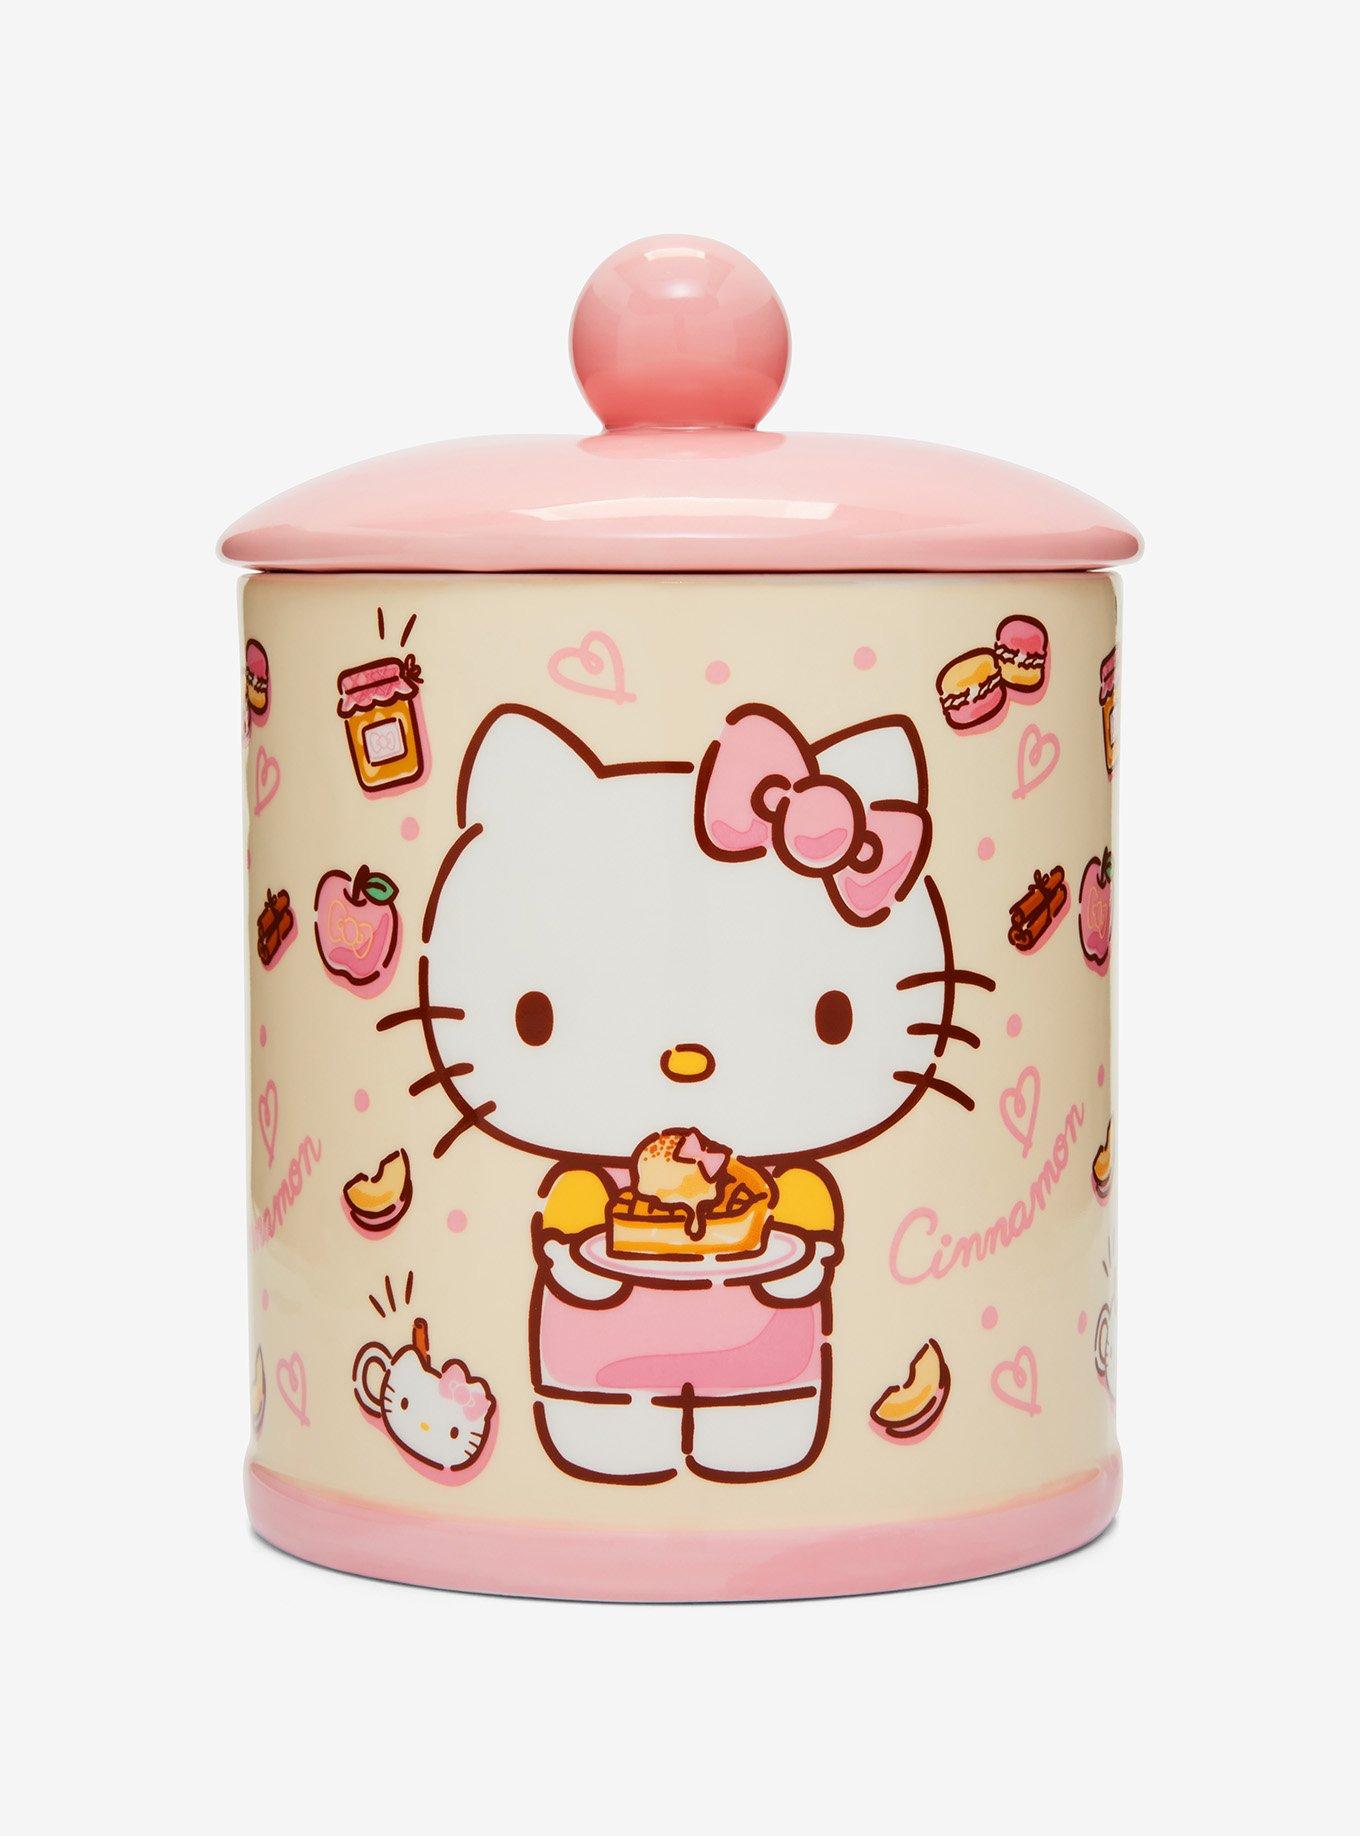 Ceramic Sanrio Hello Kitty Desserts Cookie Jar